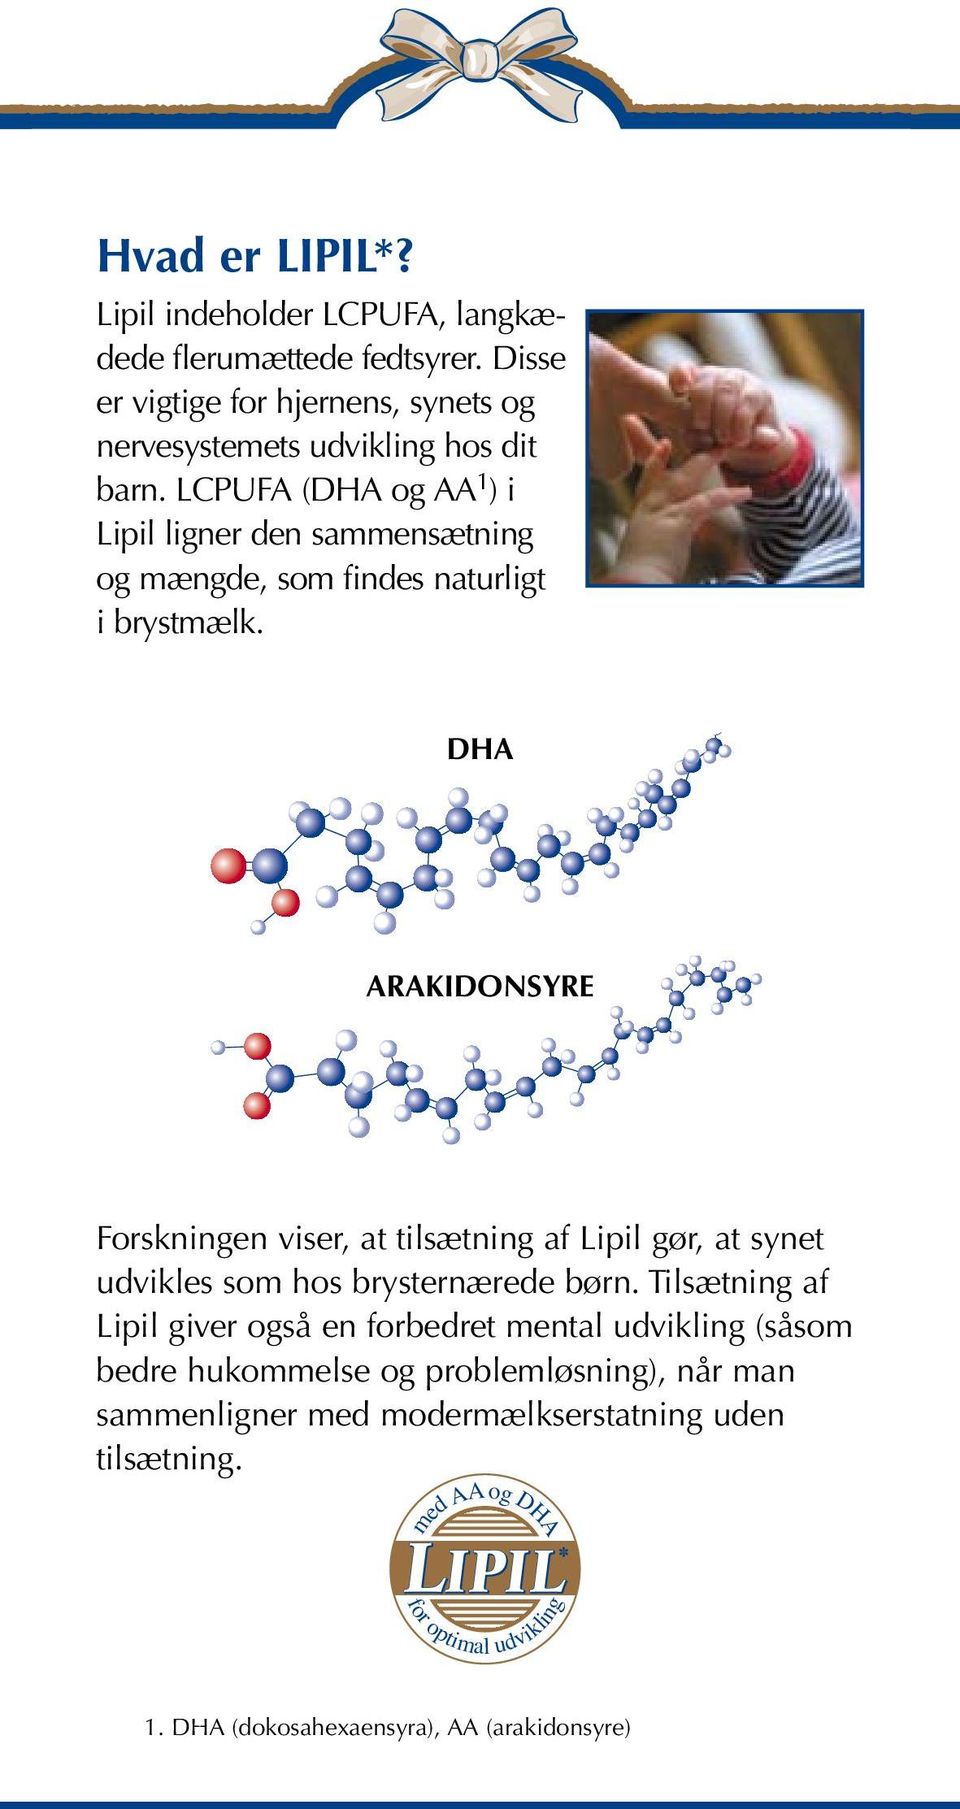 LCPUFA (DHA og AA 1 ) i Lipil ligner den sammensætning og mængde, som findes naturligt i brystmælk.